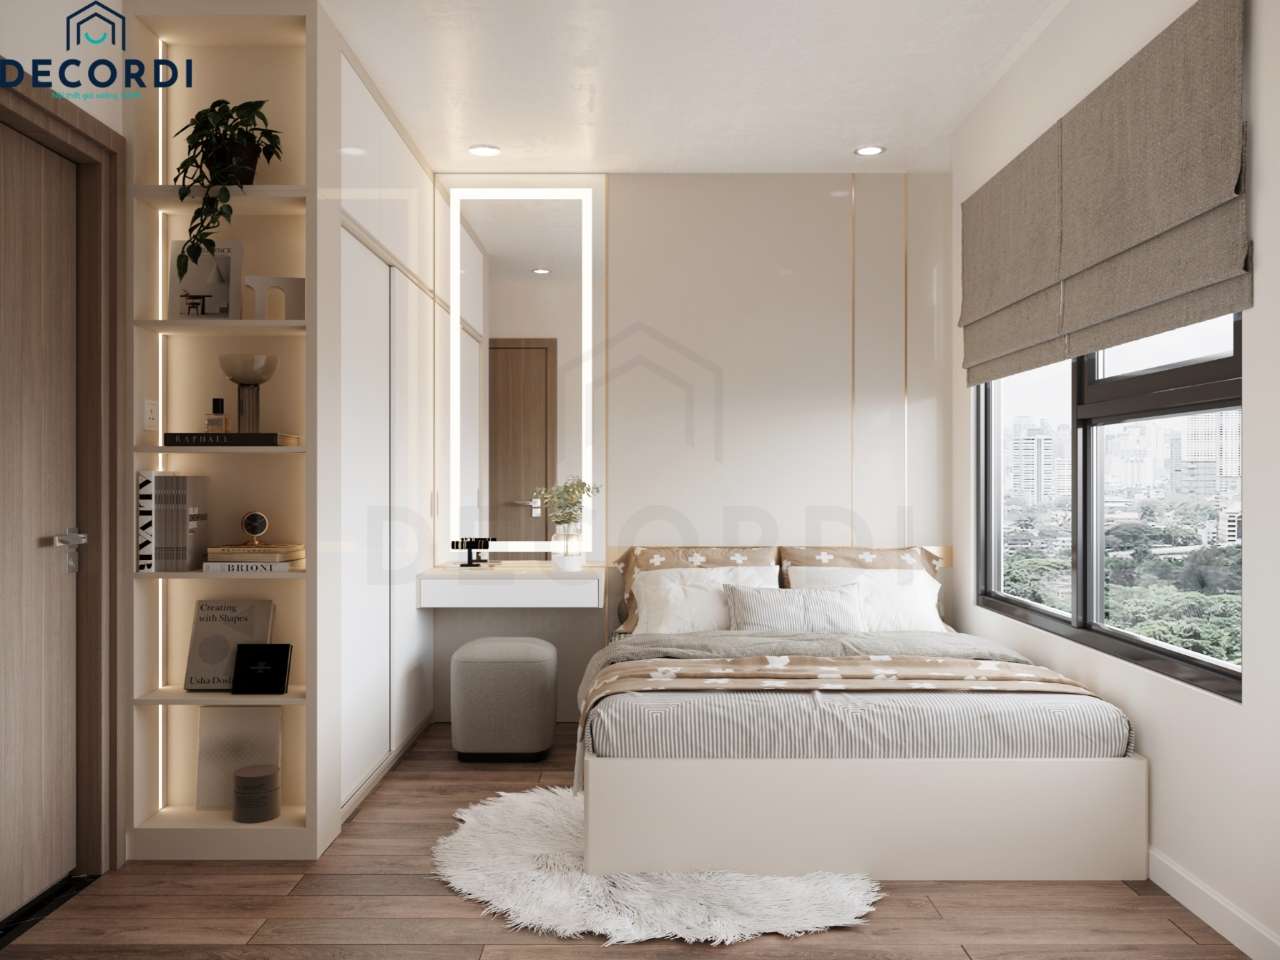 Tổng thể không gian phòng ngủ đơn giản nhưnhg sang trọng nhờ vách ốp đâu giường acrylic chạy chỉ vàng